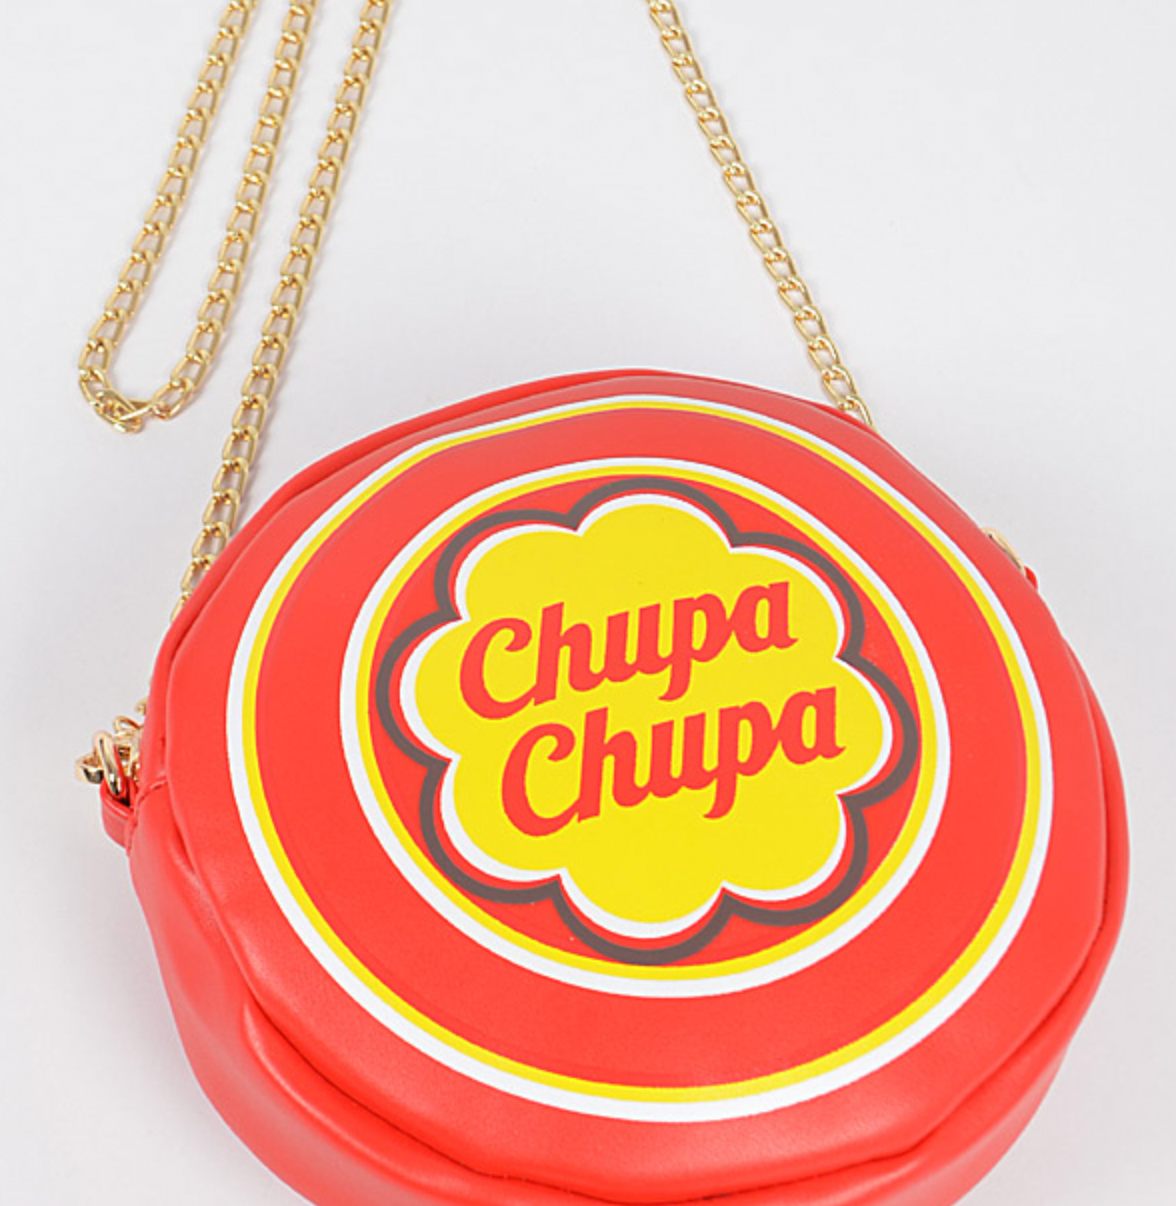 Chupa Chupa Crossbody